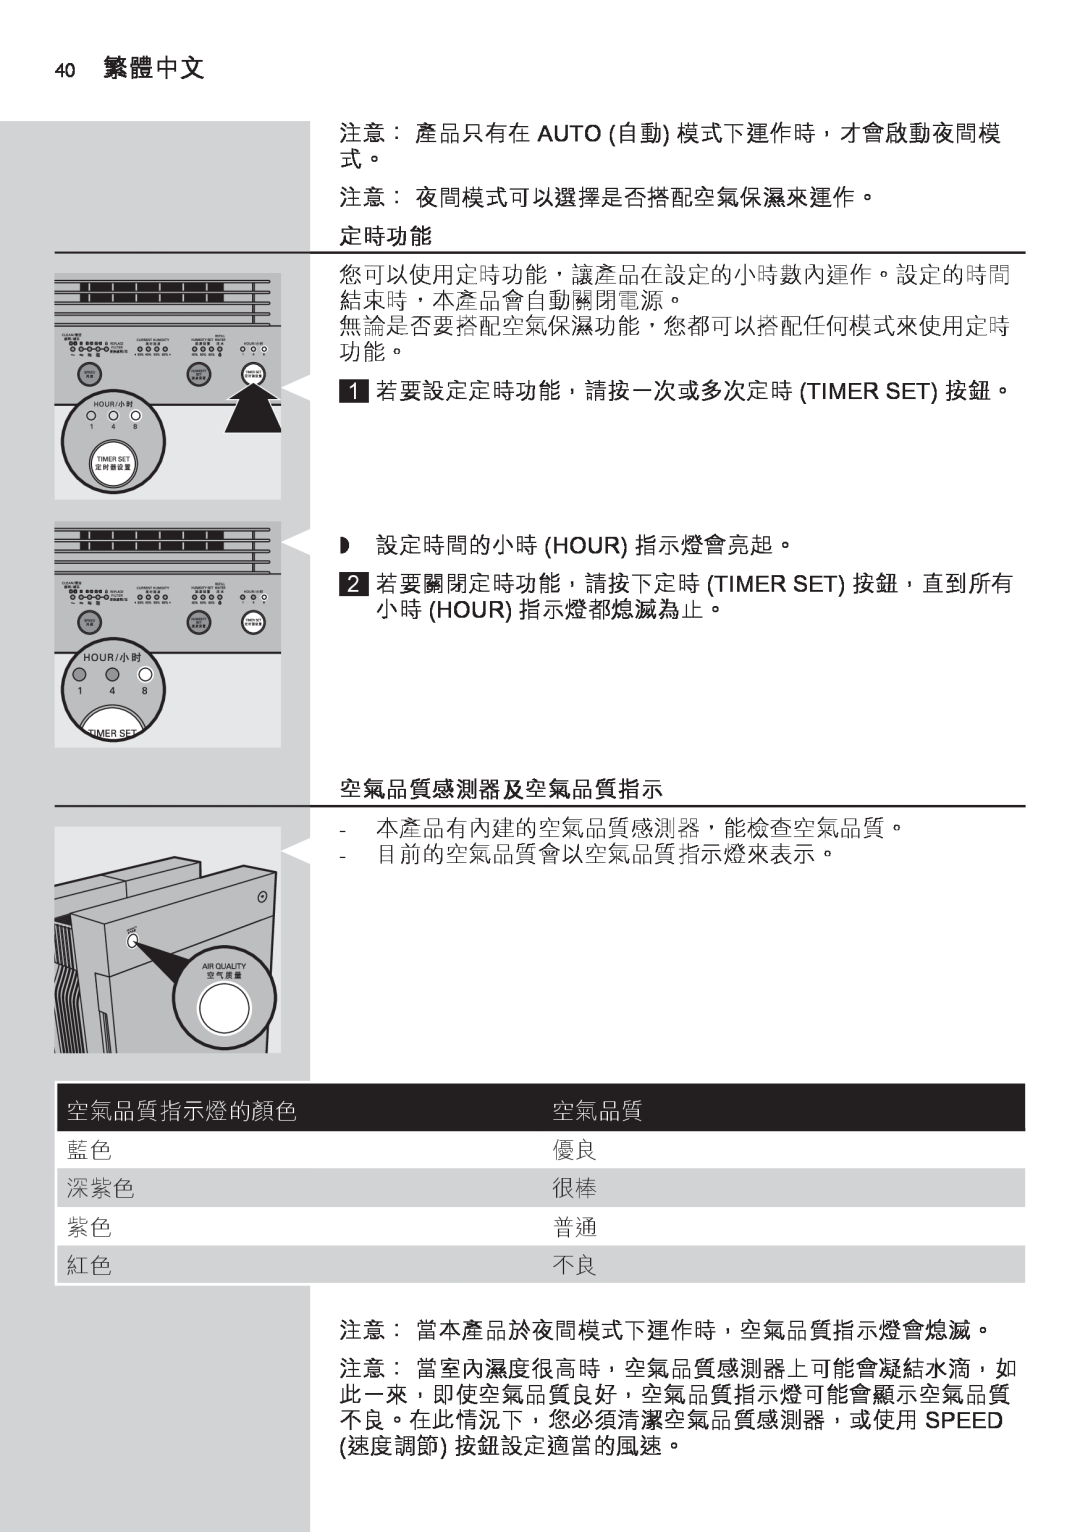 Philips AC4083 manual 40繁體中文, 定時功能, 空氣品質感測器及空氣品質指示, 空氣品質指示燈的顏色 